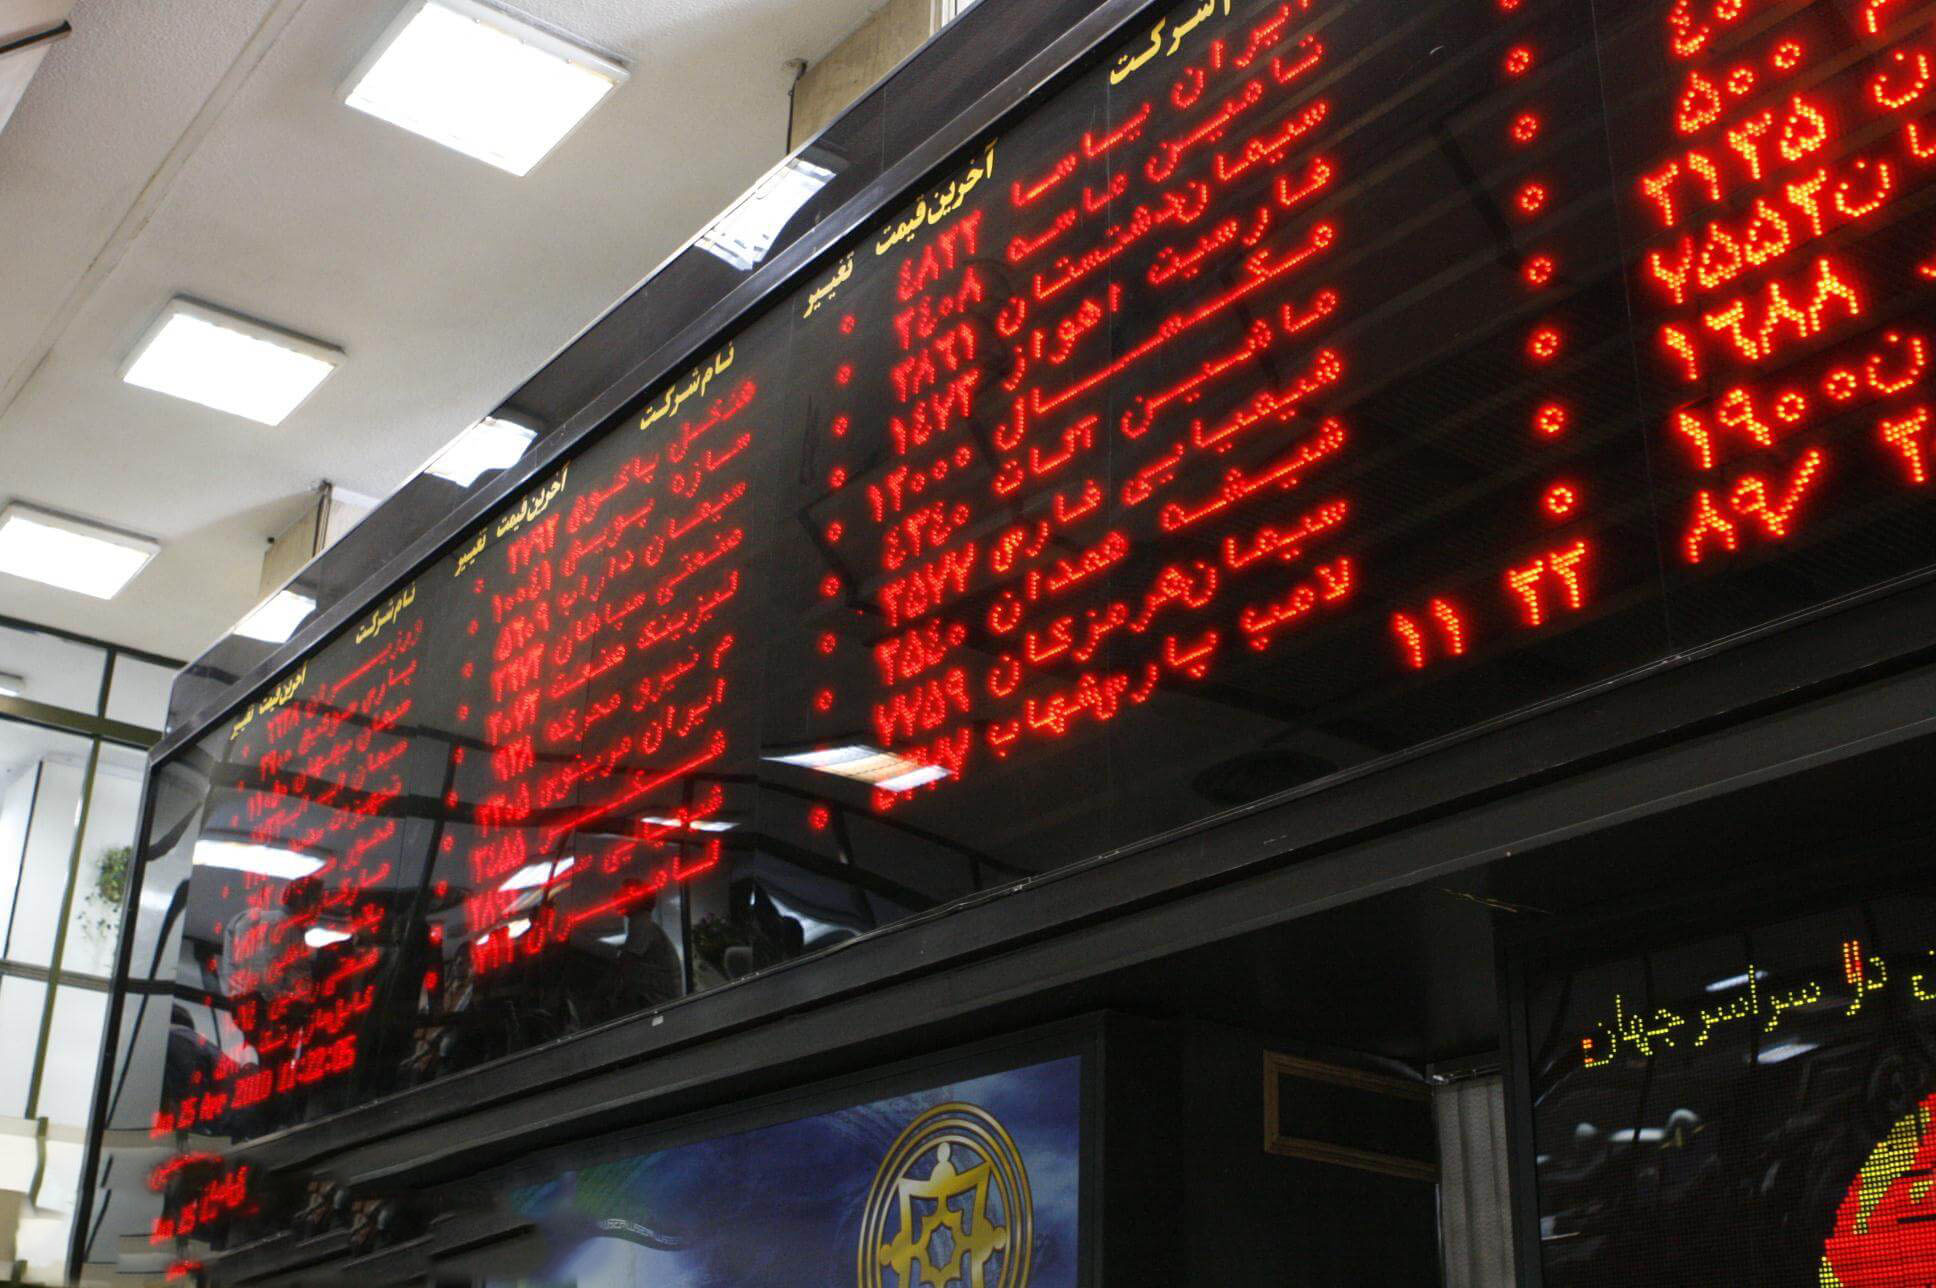 اخبار اقتصادی,خبرهای اقتصادی,بورس و سهام,بورس تهران